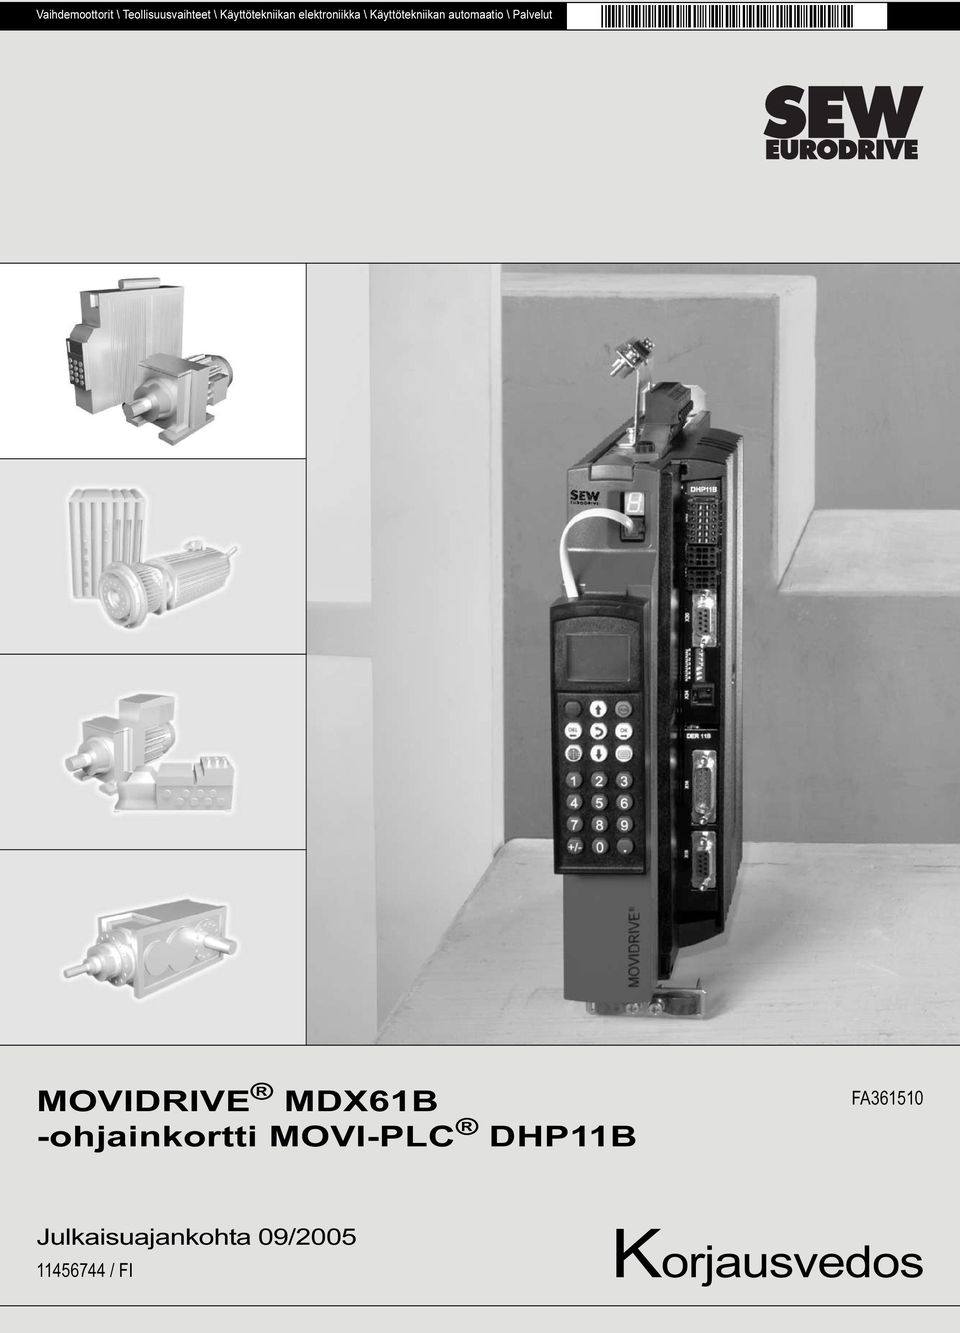 MOVIDRIVE MDX61B -ohjainkortti MOVI-PLC DHP11B